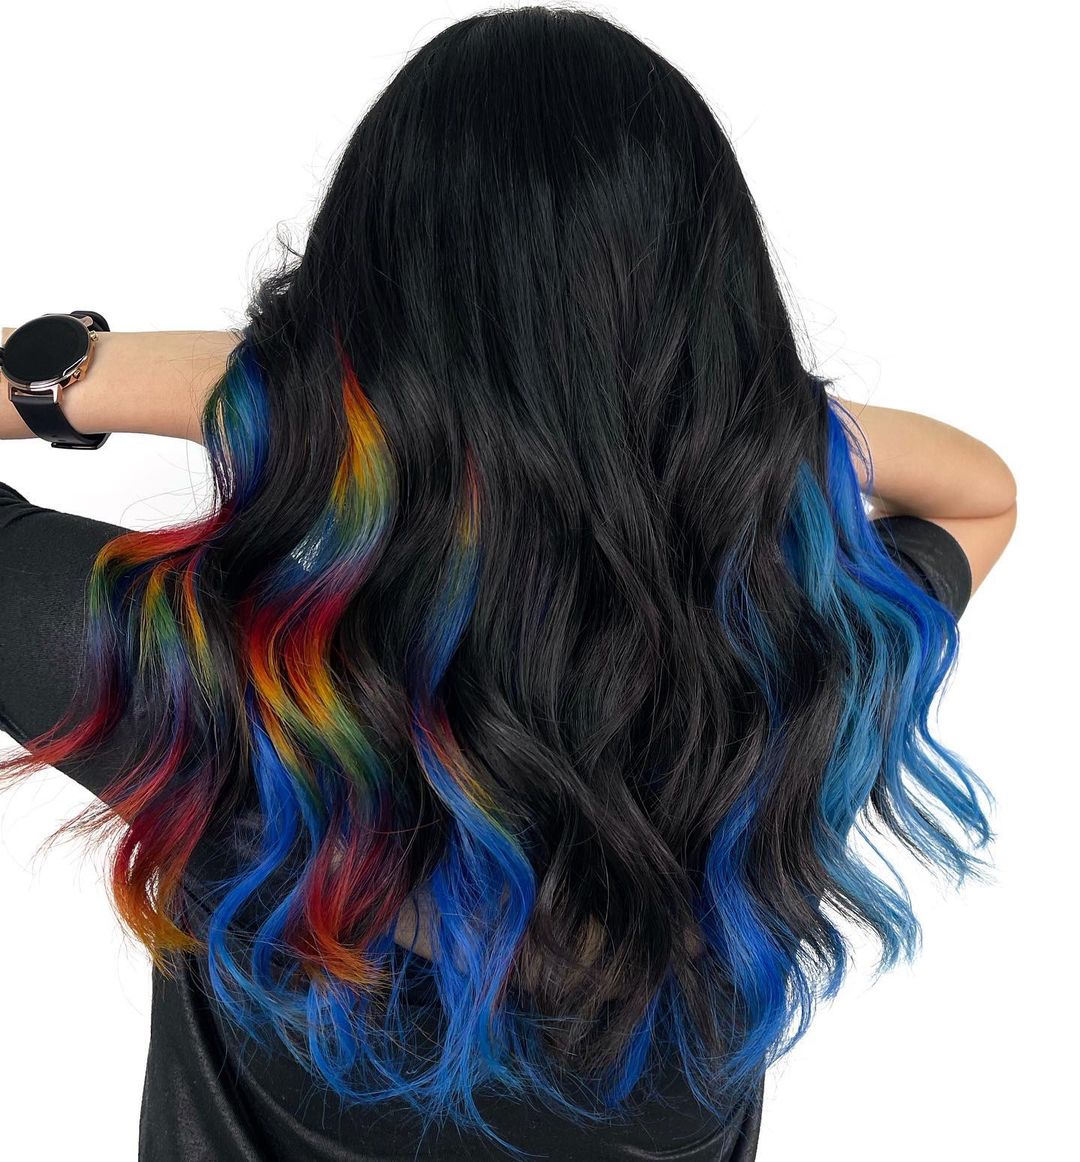 Long Black Hair with Rainbow Highlights